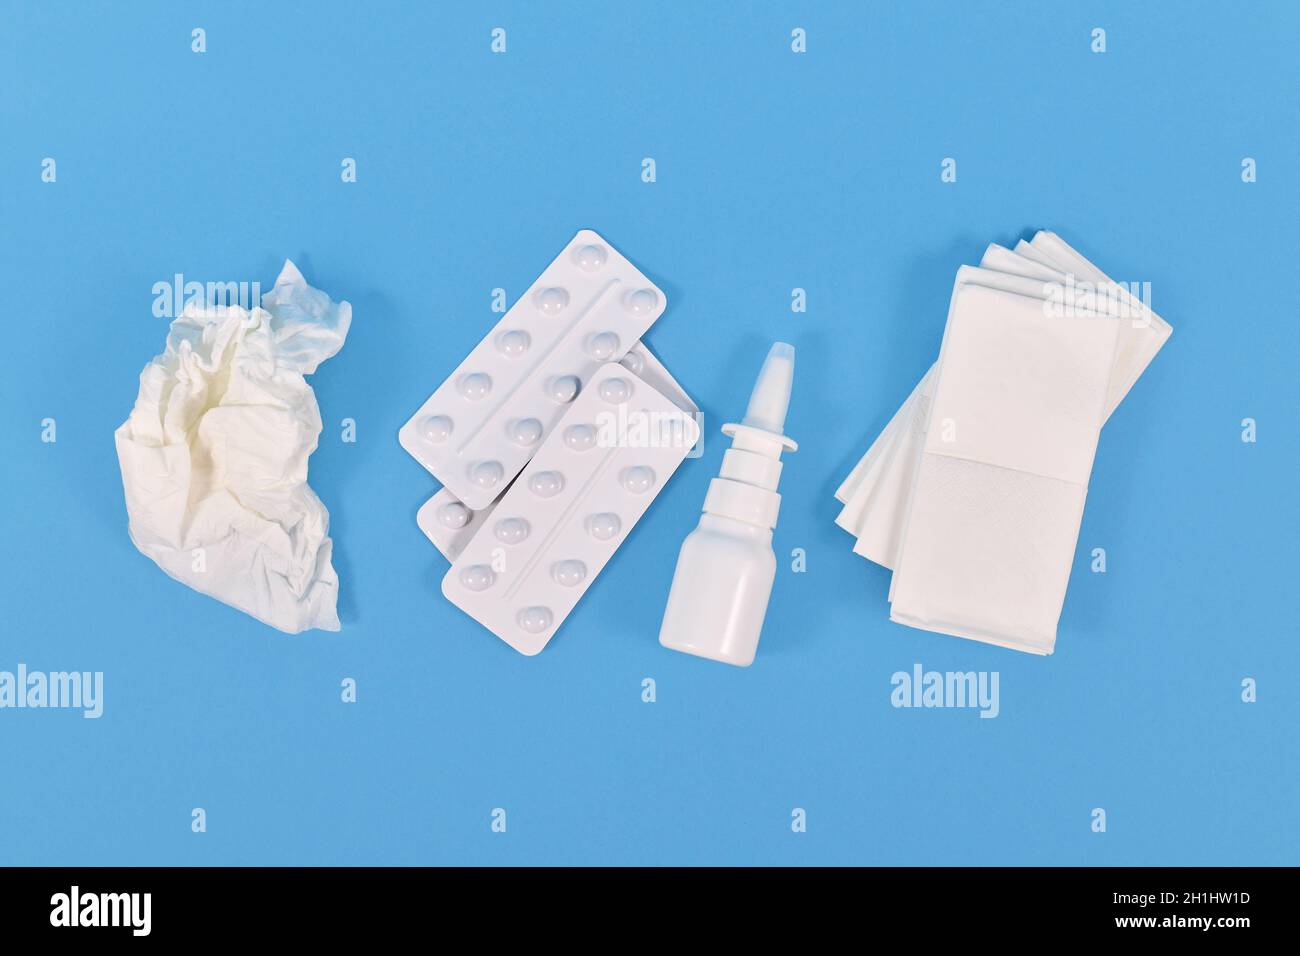 Draufsicht auf Nasensprayflasche, Medikamentententabletten und verwendetes Gewebe, das während der Erkältung auf blauem Hintergrund verwendet wird Stockfoto